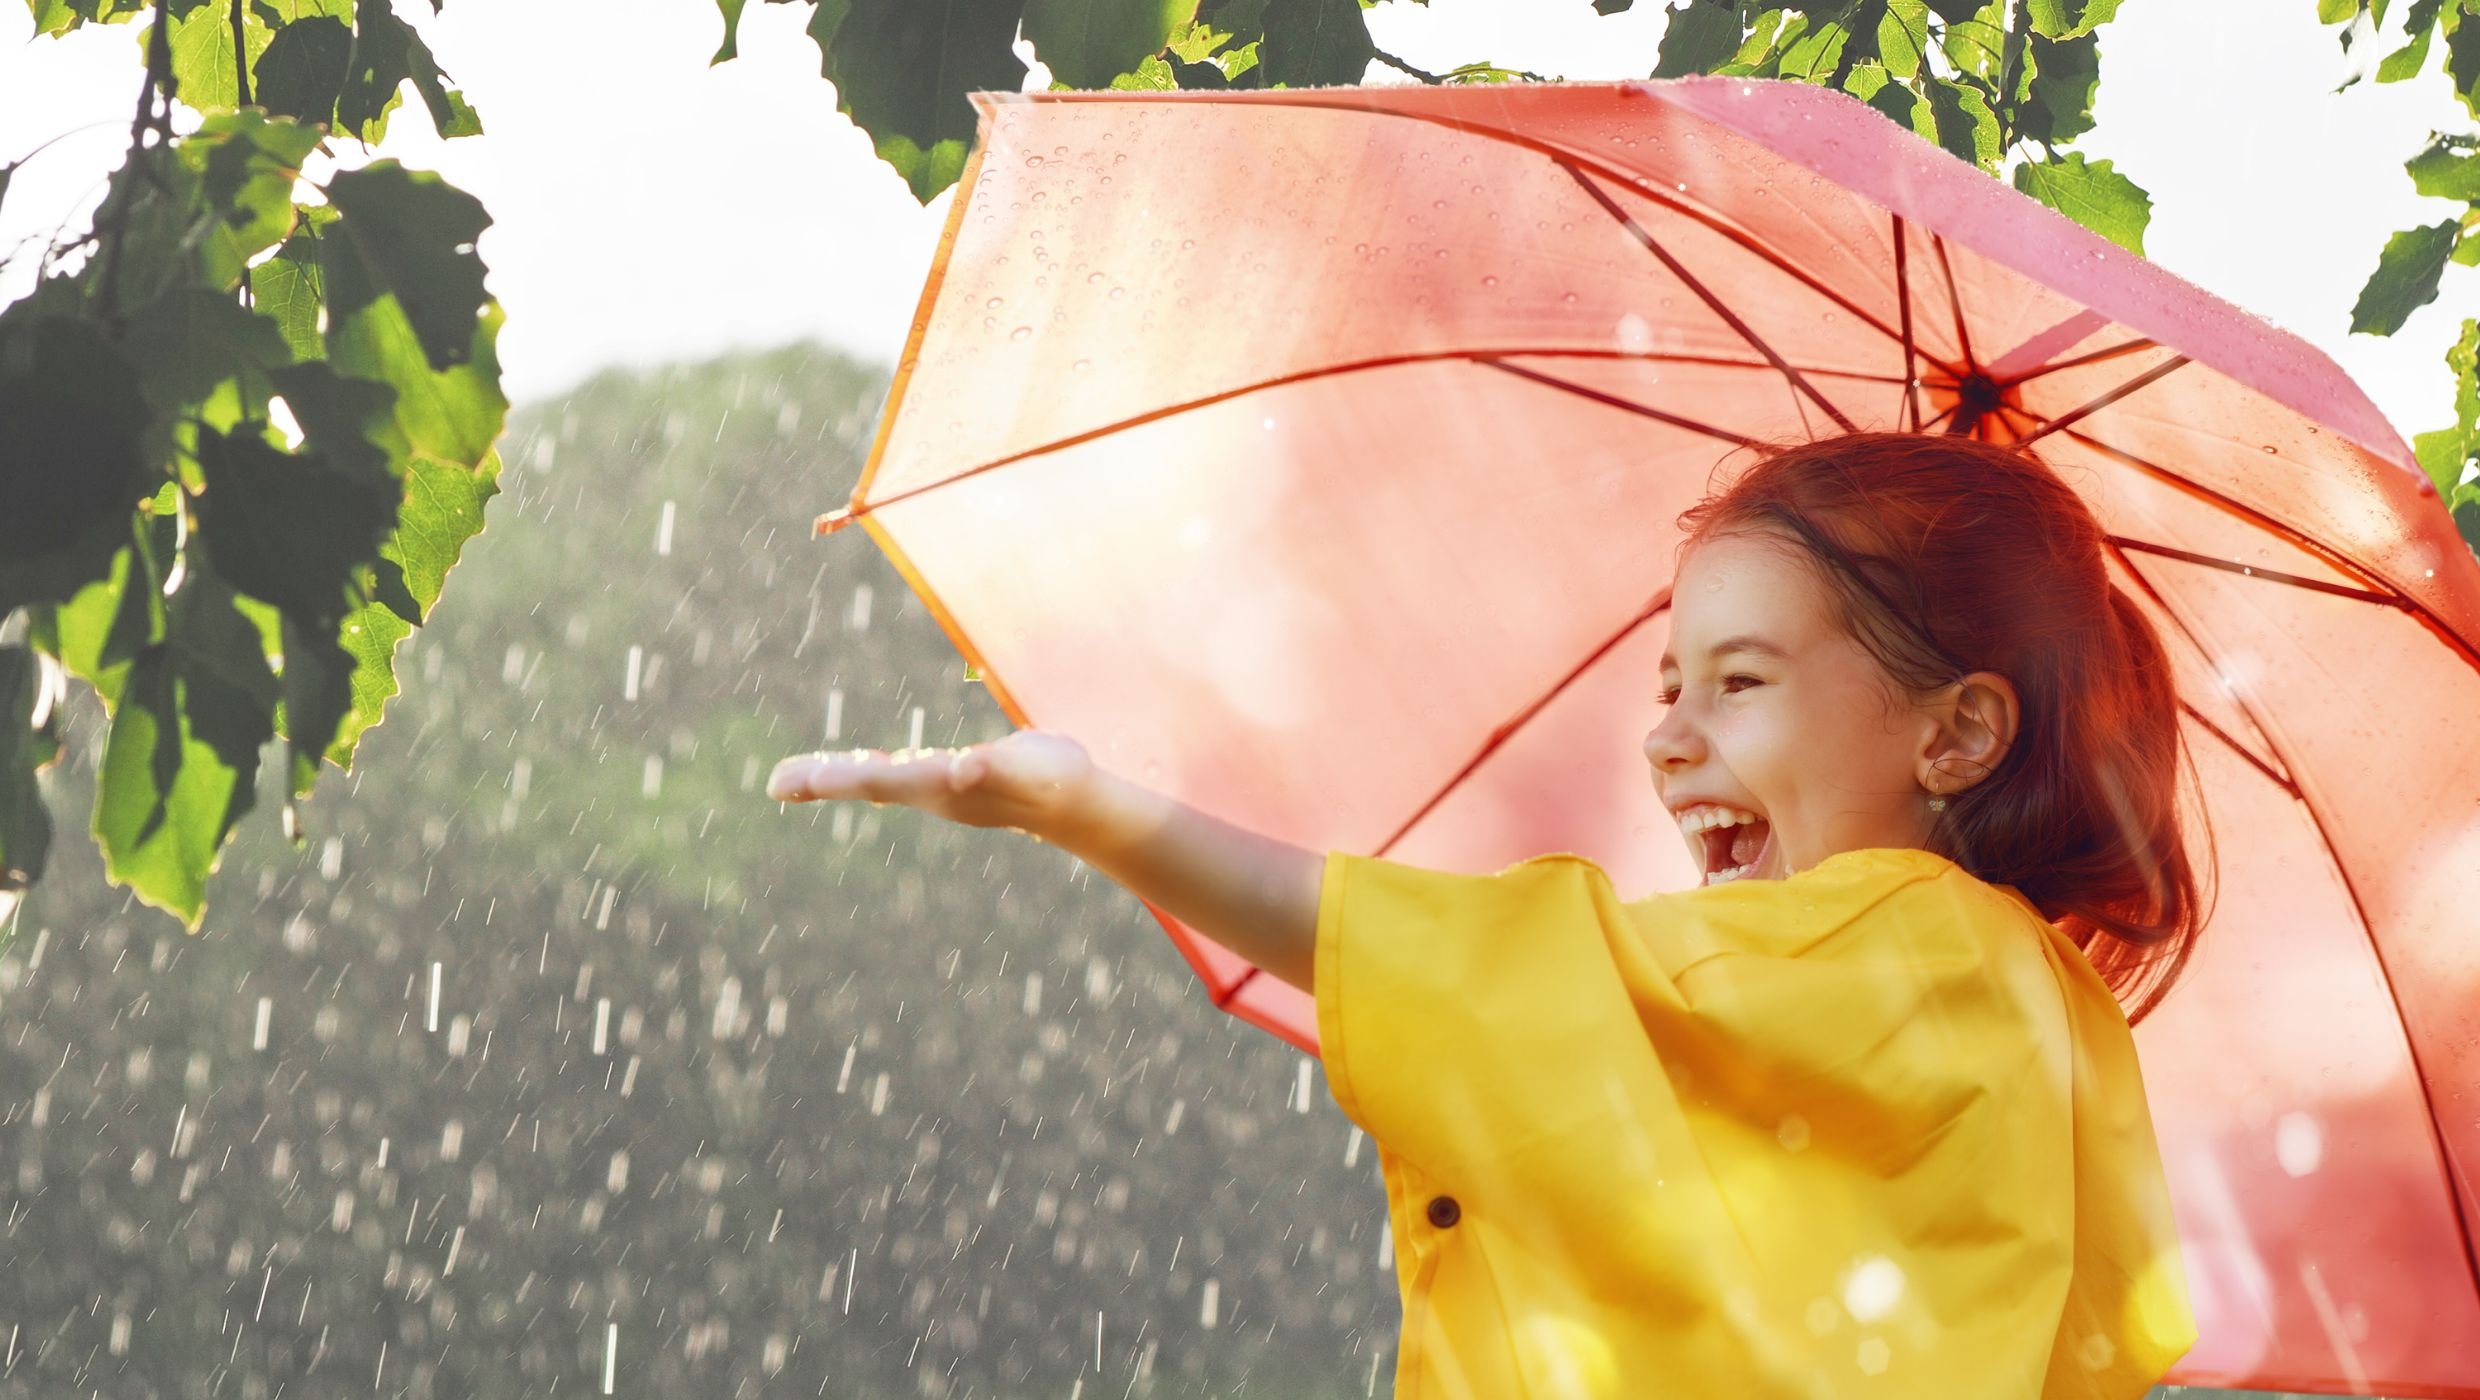 Pieni ruskeahiuksinen tyttö keltaisessa sadetakissa ja vaaleanpunaisen sateenvarjon alla ojentaa vasemman käden kohti sadepisaroita. Taustalla näkyy vihreää ja auringon pilkahduksia.